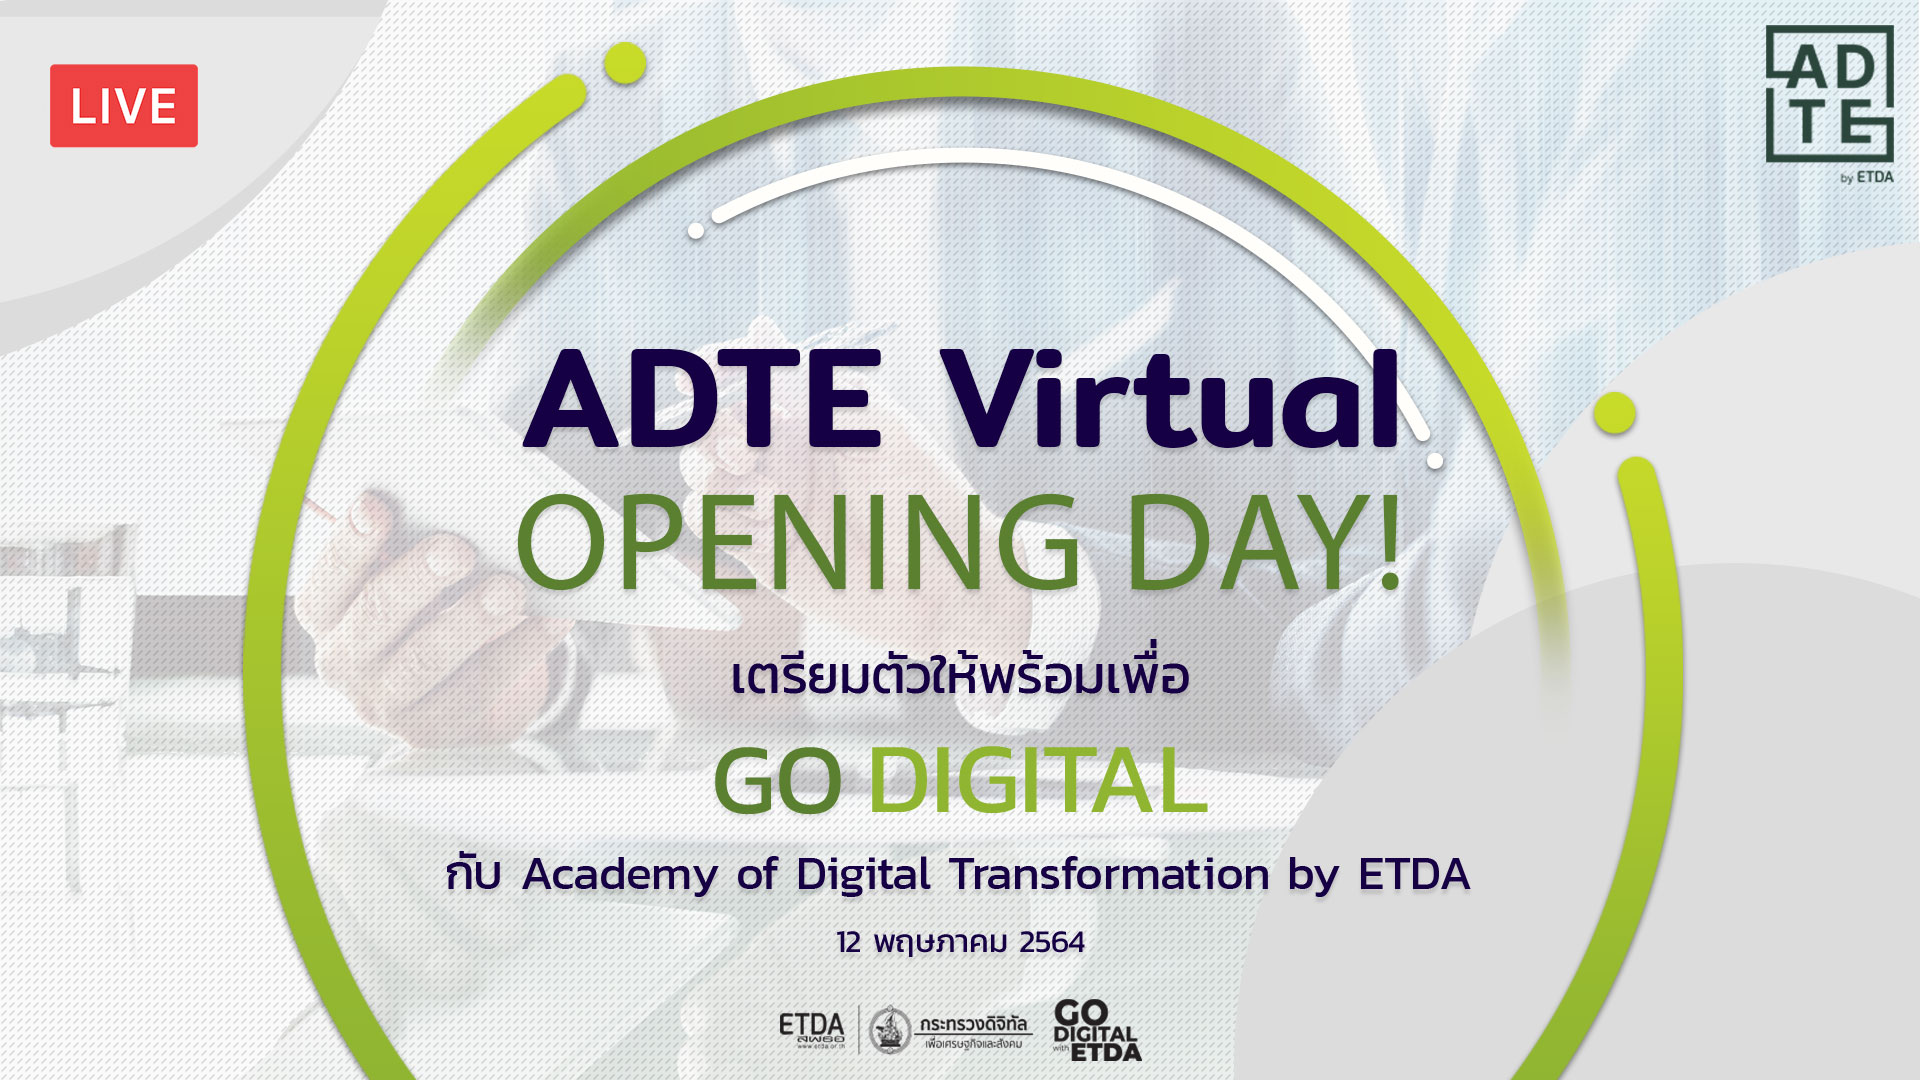 ผอ.ETDA เชิญร่วมงาน ADTE Virtual Opening Day 12 พ.ค. นี้ ทางออนไลน์